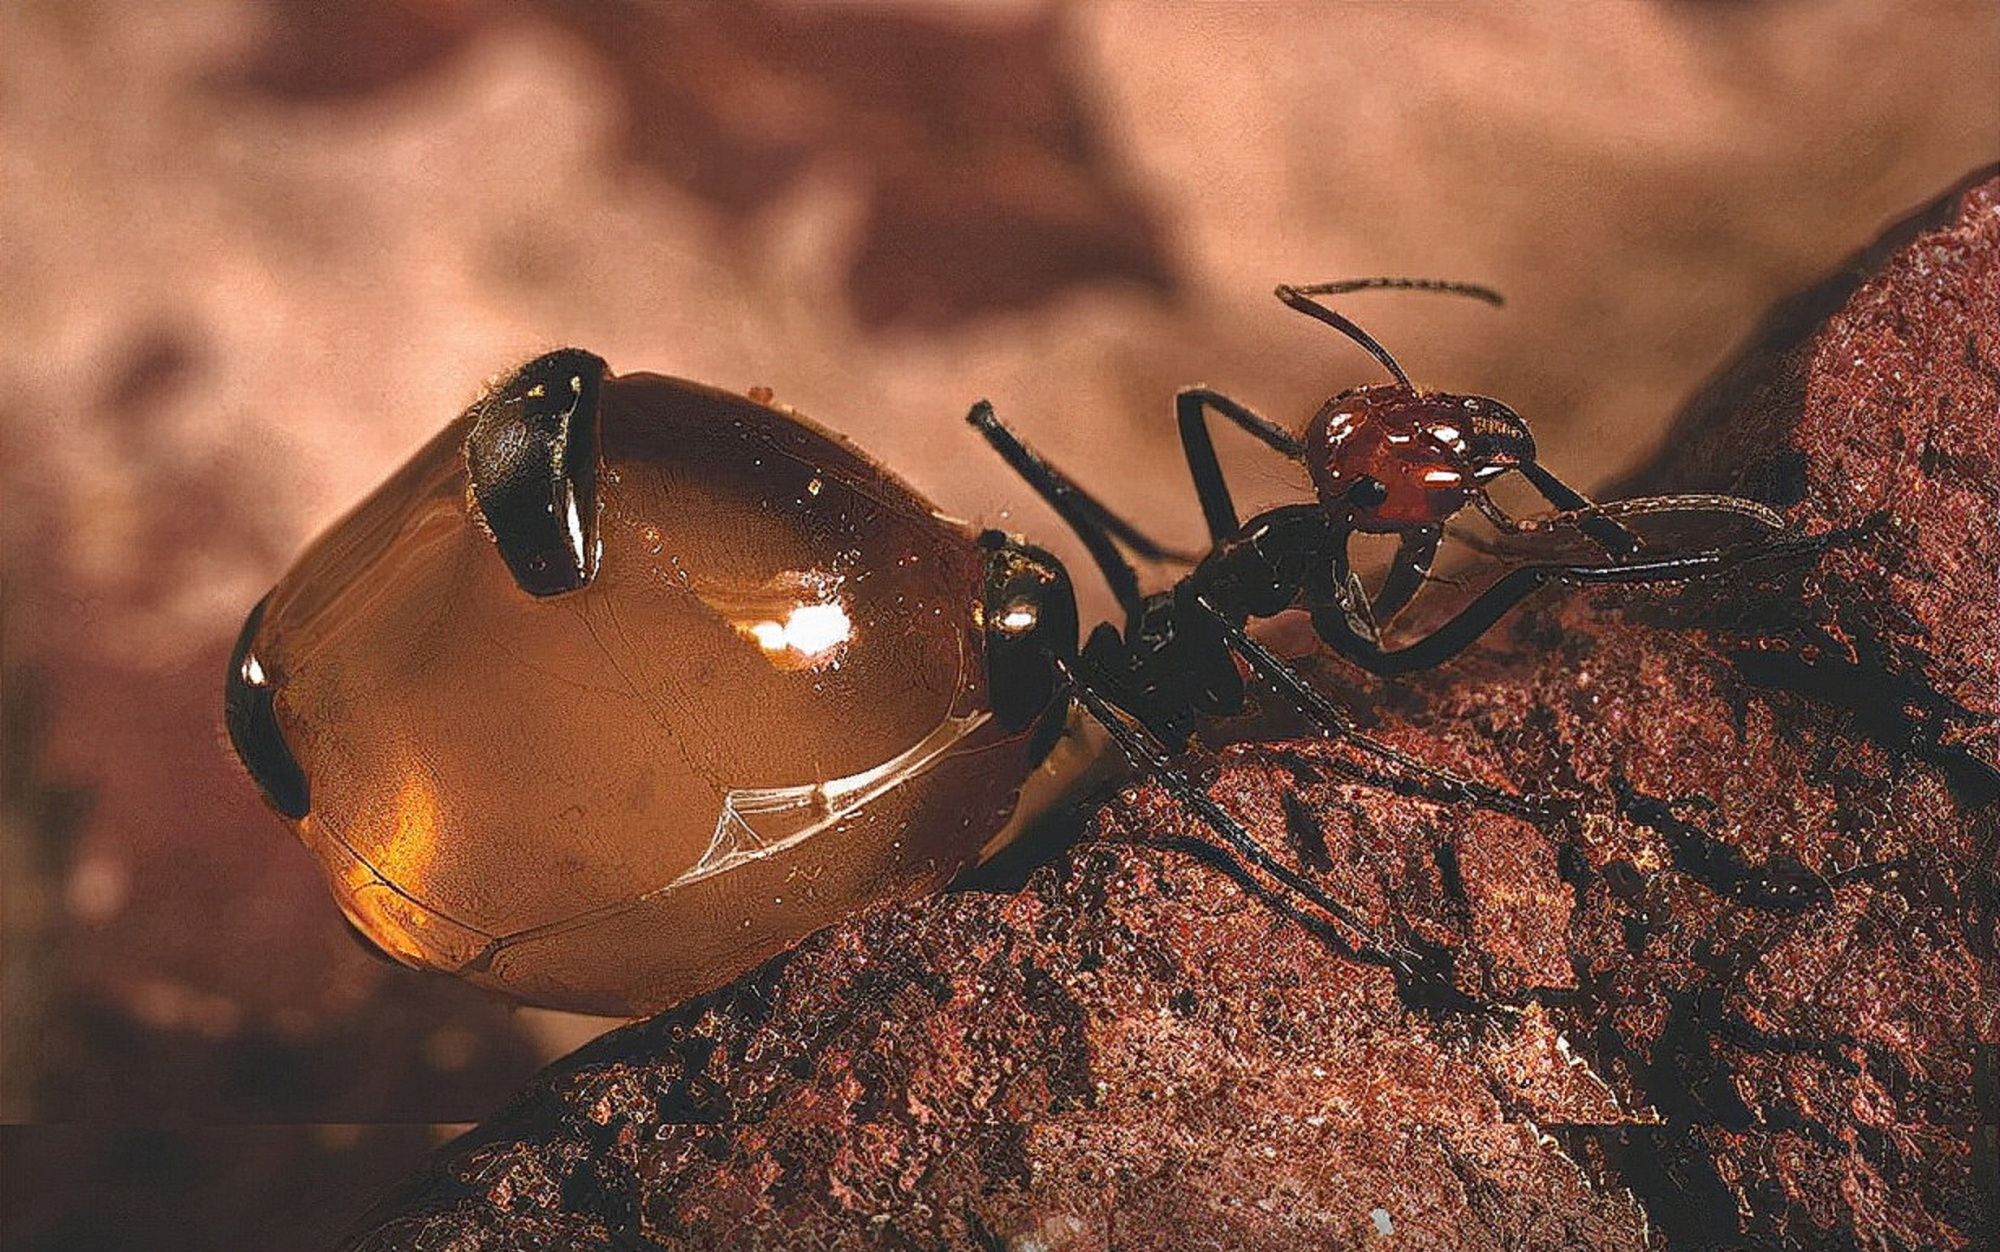 世界上最大的蚂蚁蜜罐蚂蚁